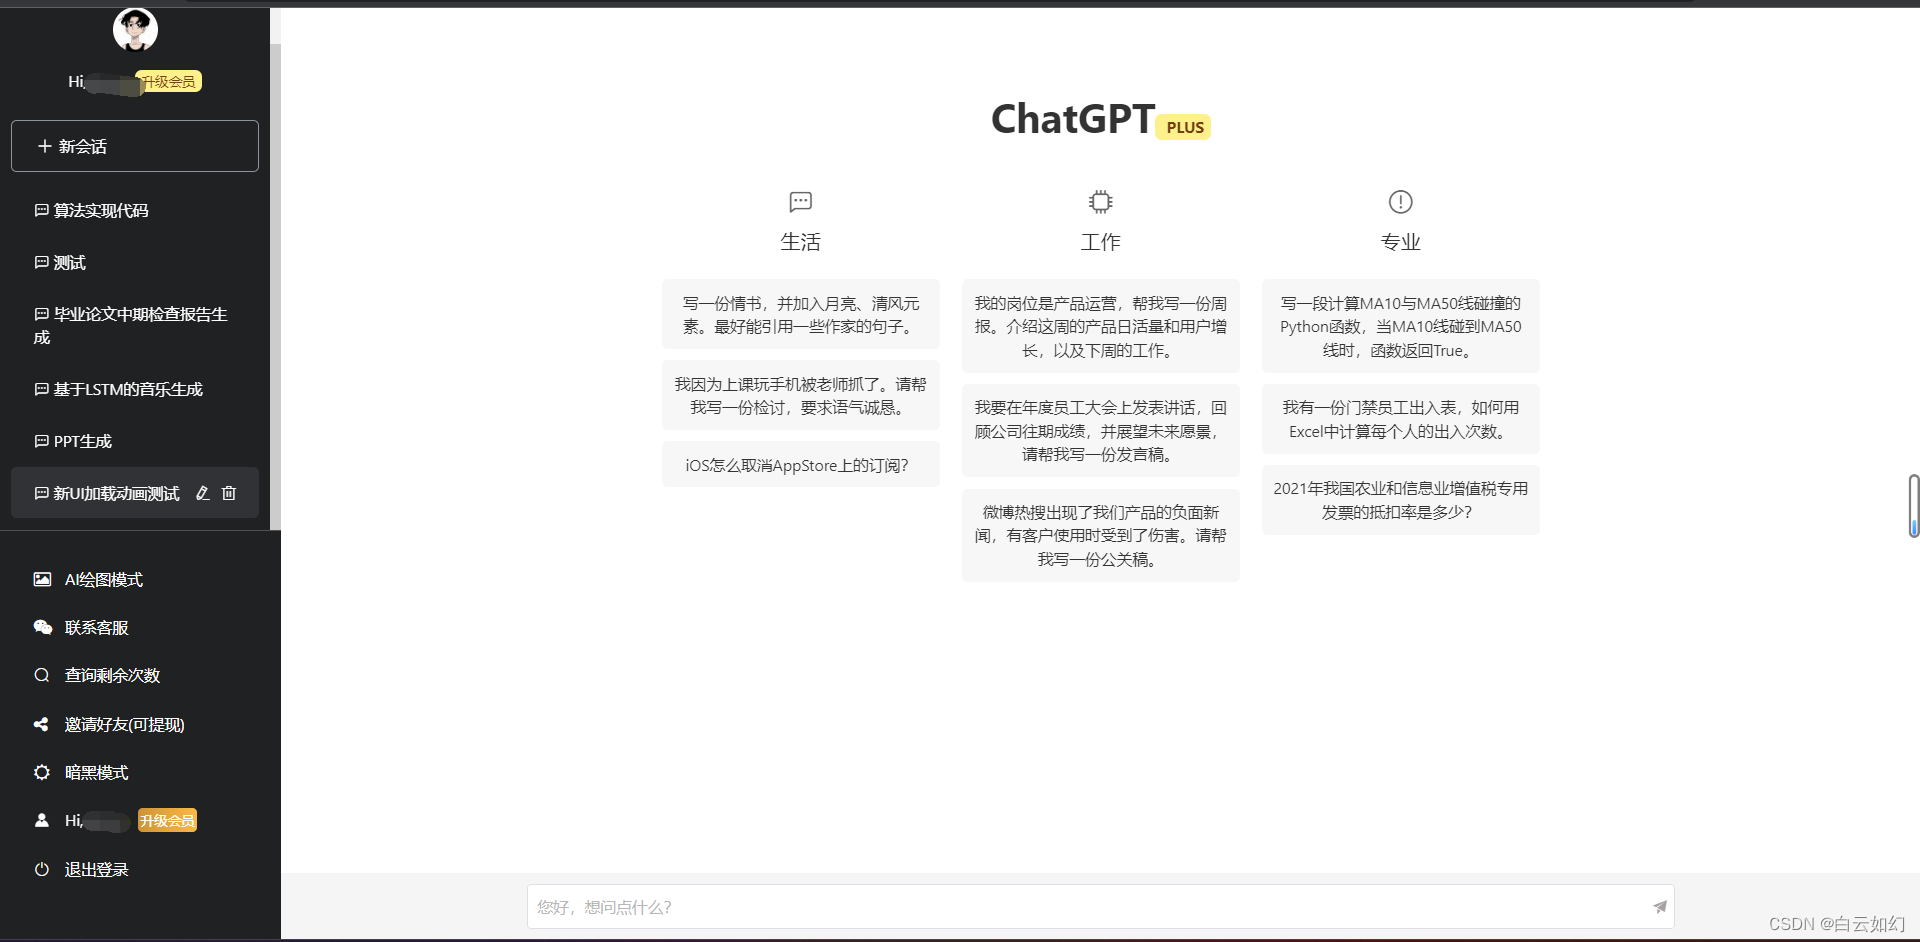 Código-fonte do site ChatGPT